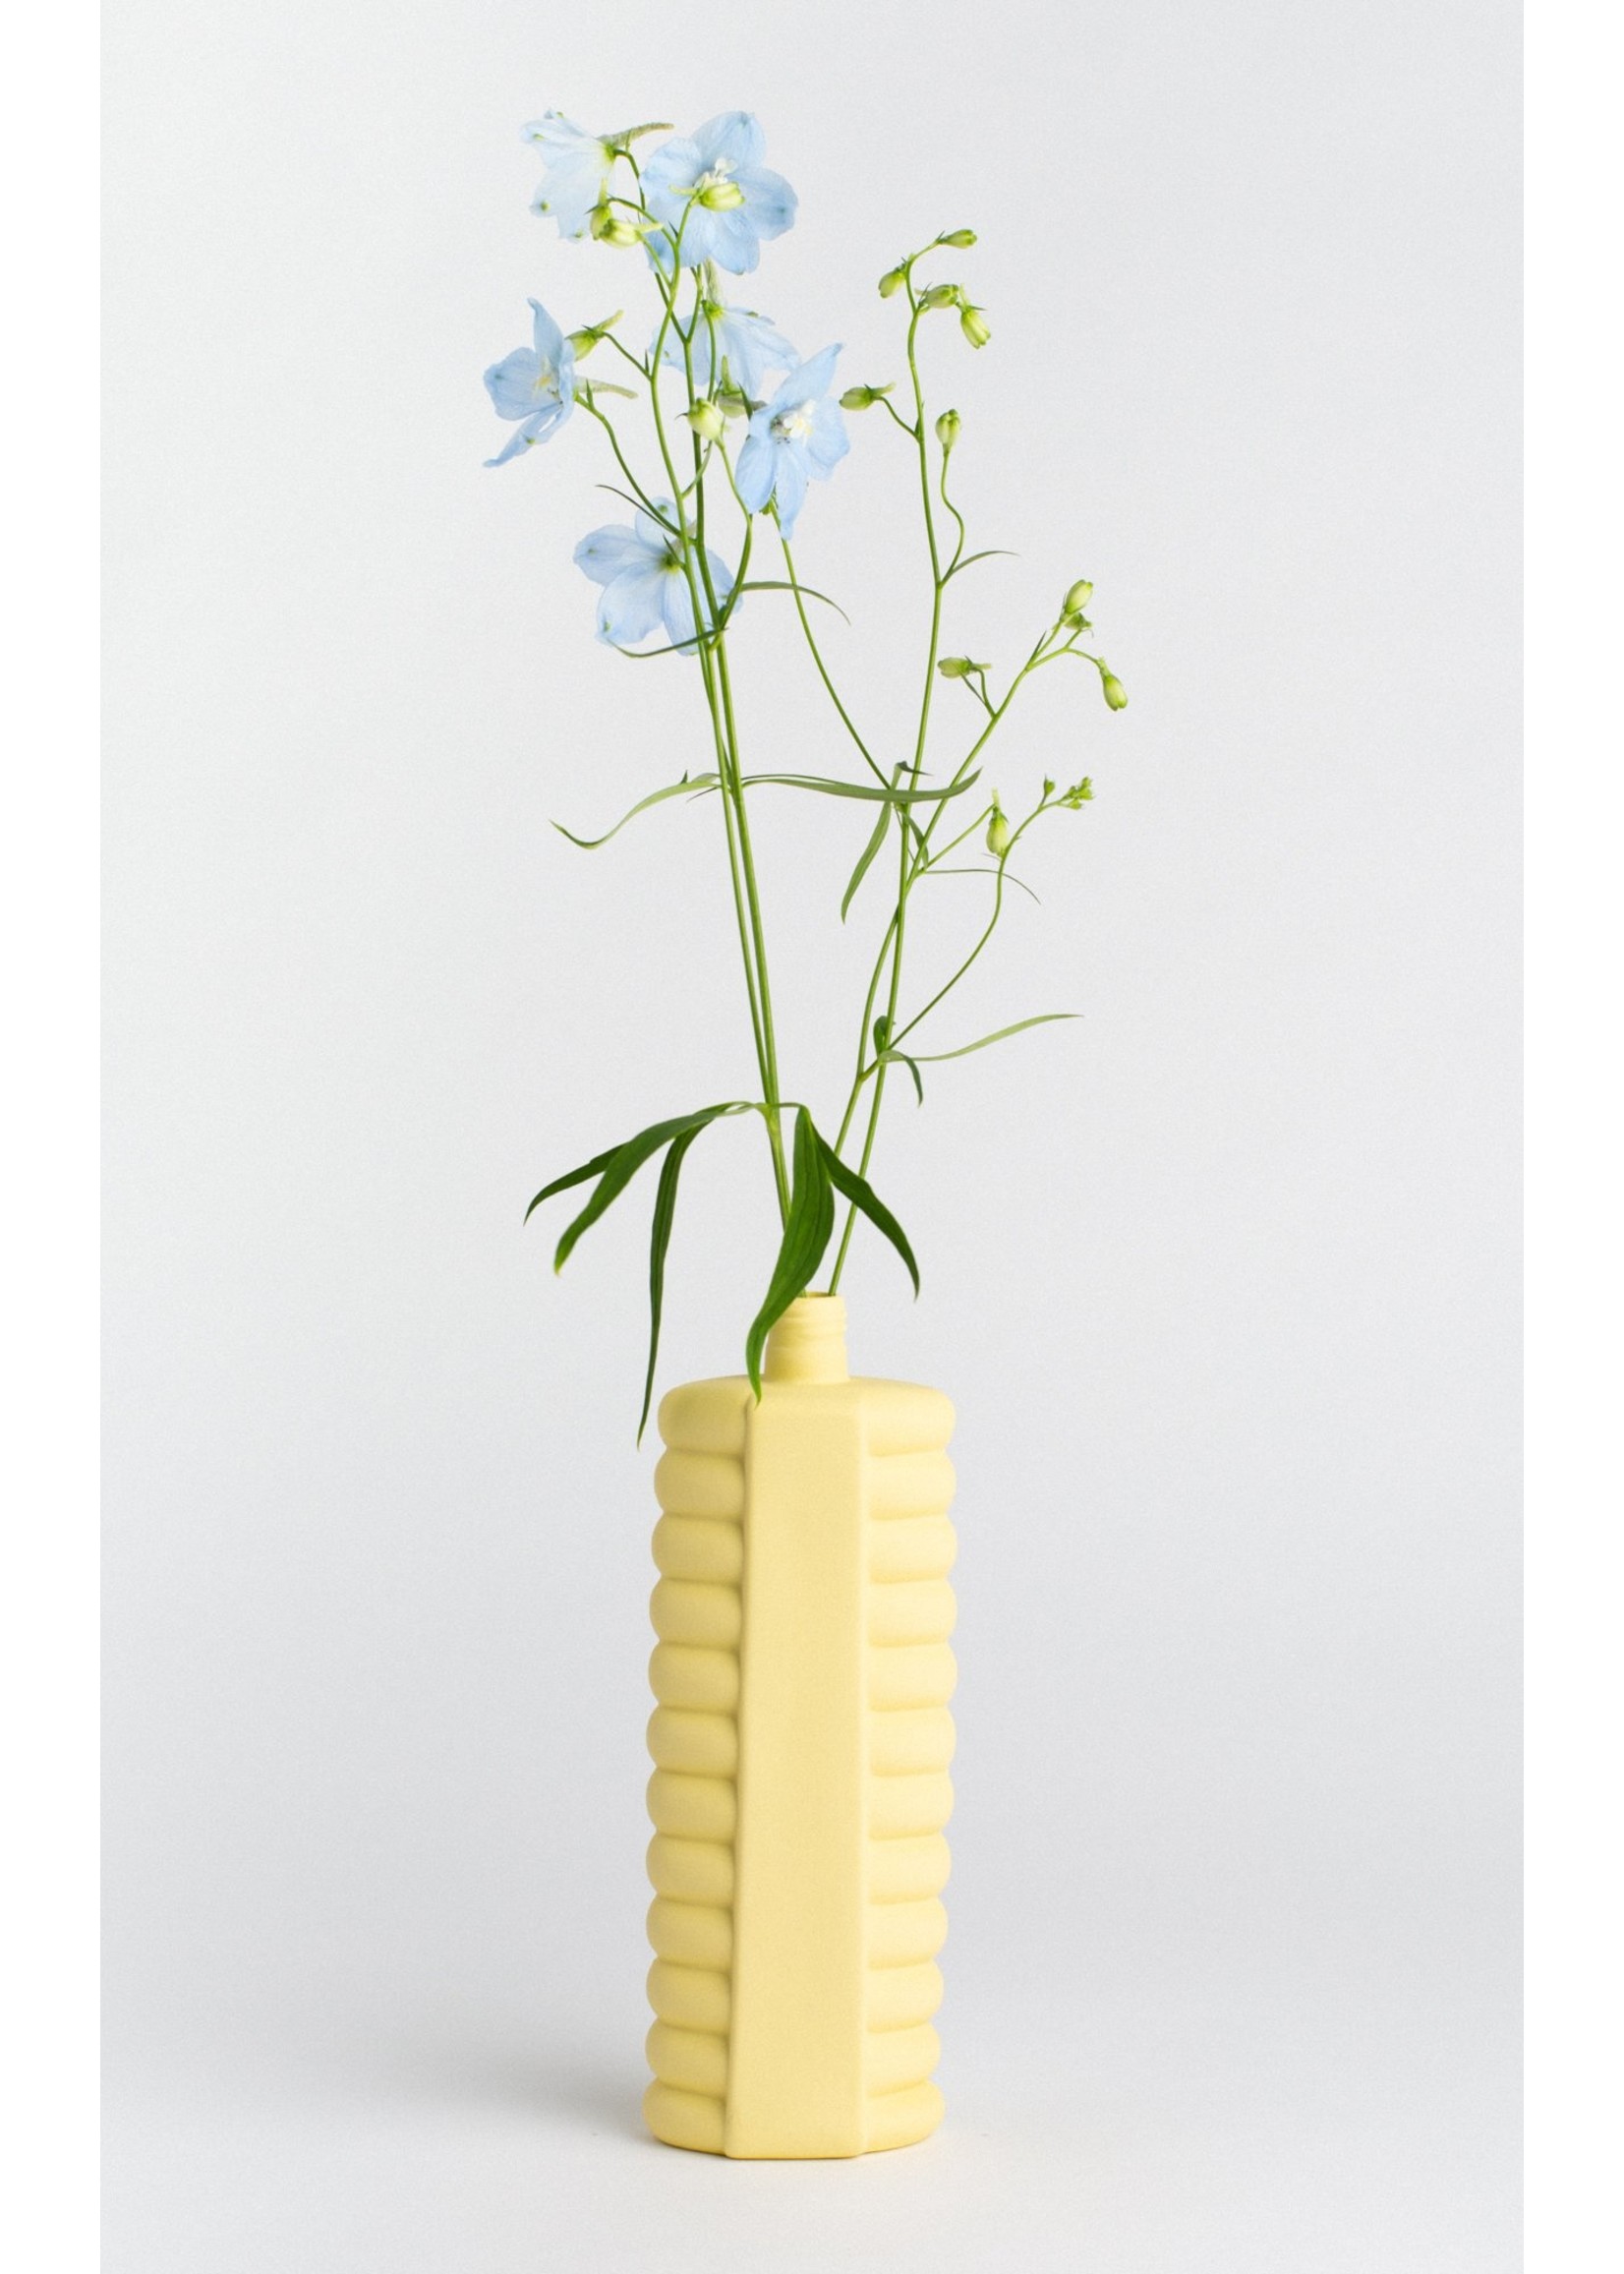 Foekje Fleur porcelain bottle vase #10 fresh yellow